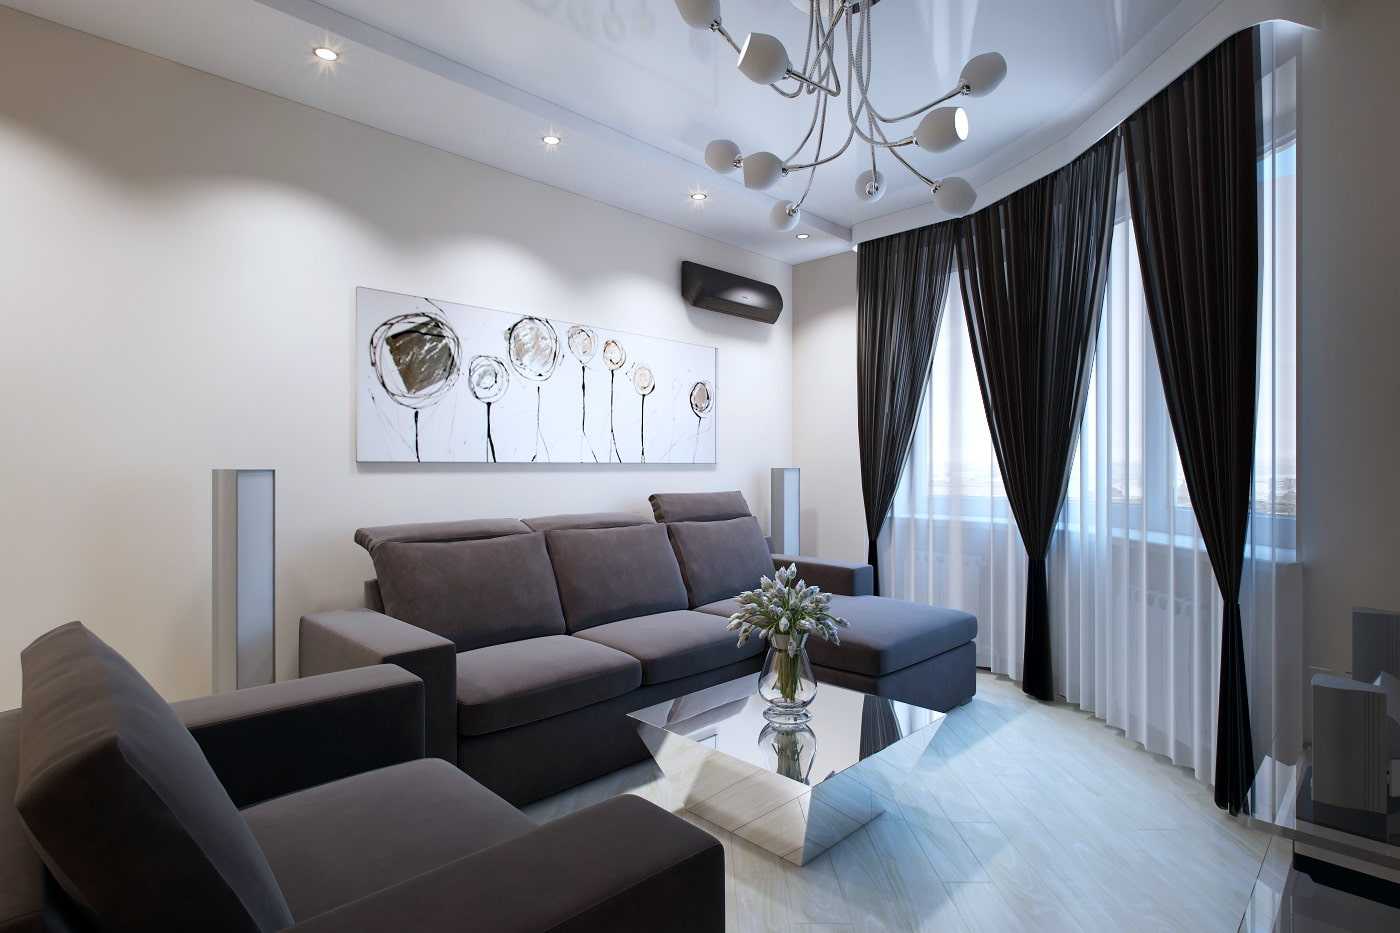 Дизайн квартиры 90 кв. м. - 150 фото идеальной планировки и современного интерьера